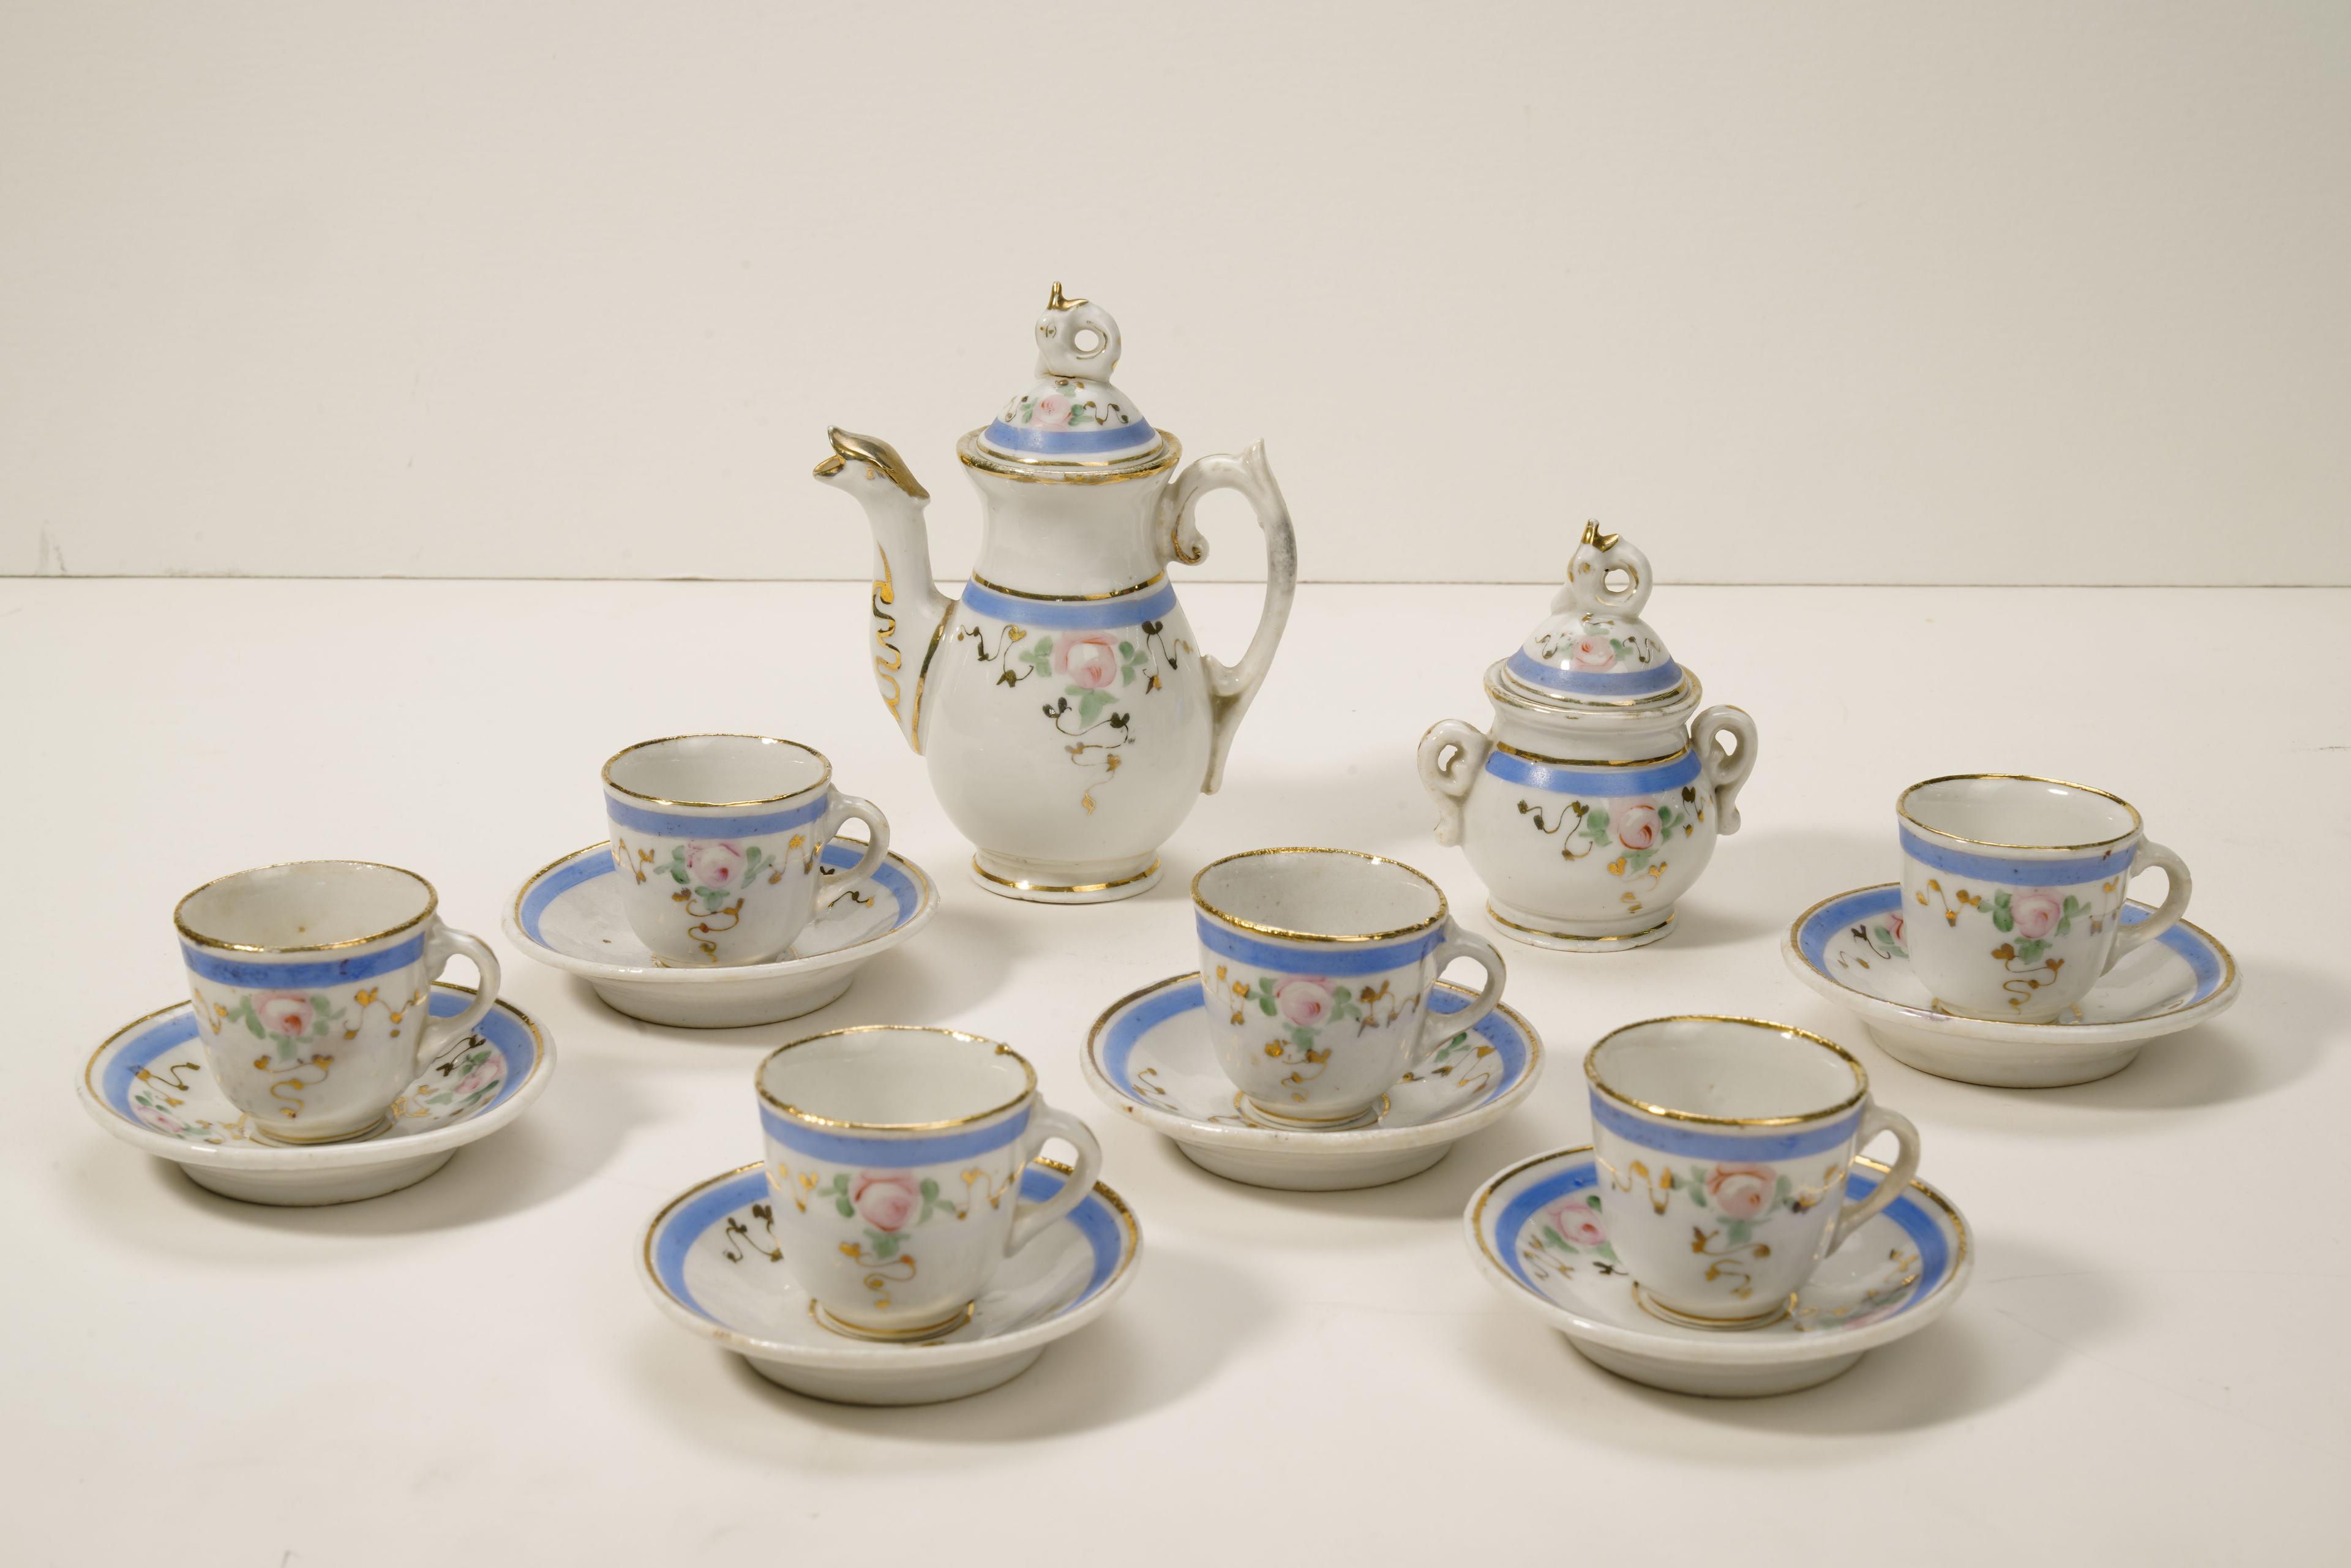 Mavi ve altın detaylarla süslenmiş, zarif bir porselen çay takımı.